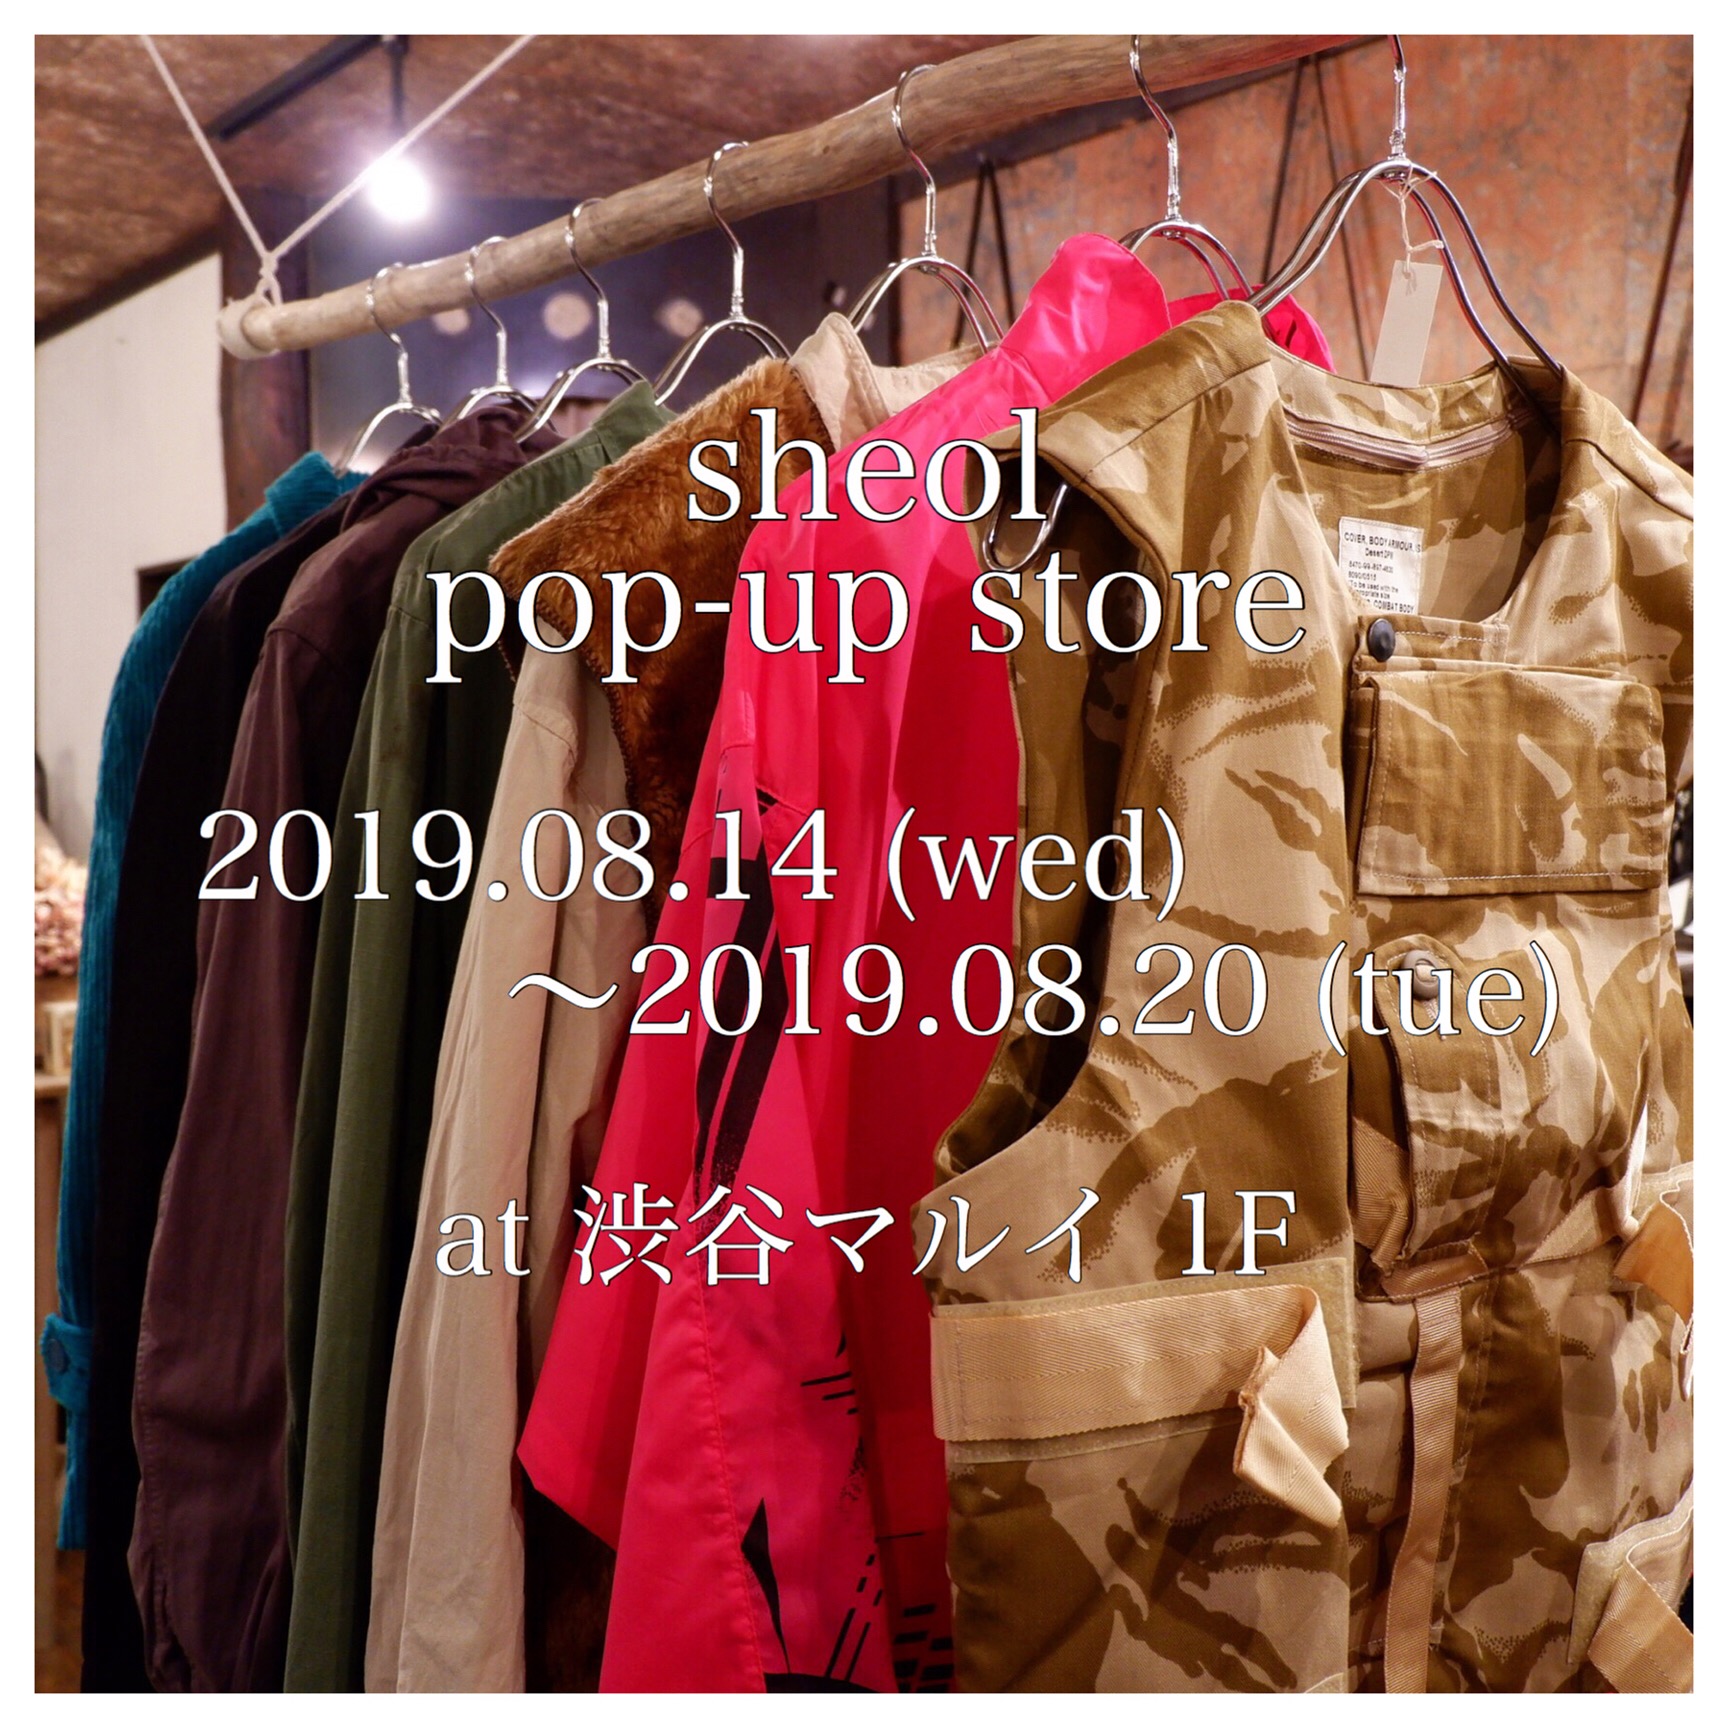 8/14(水)~8/20(火) sheol pop-up store at 渋谷マルイ 1F